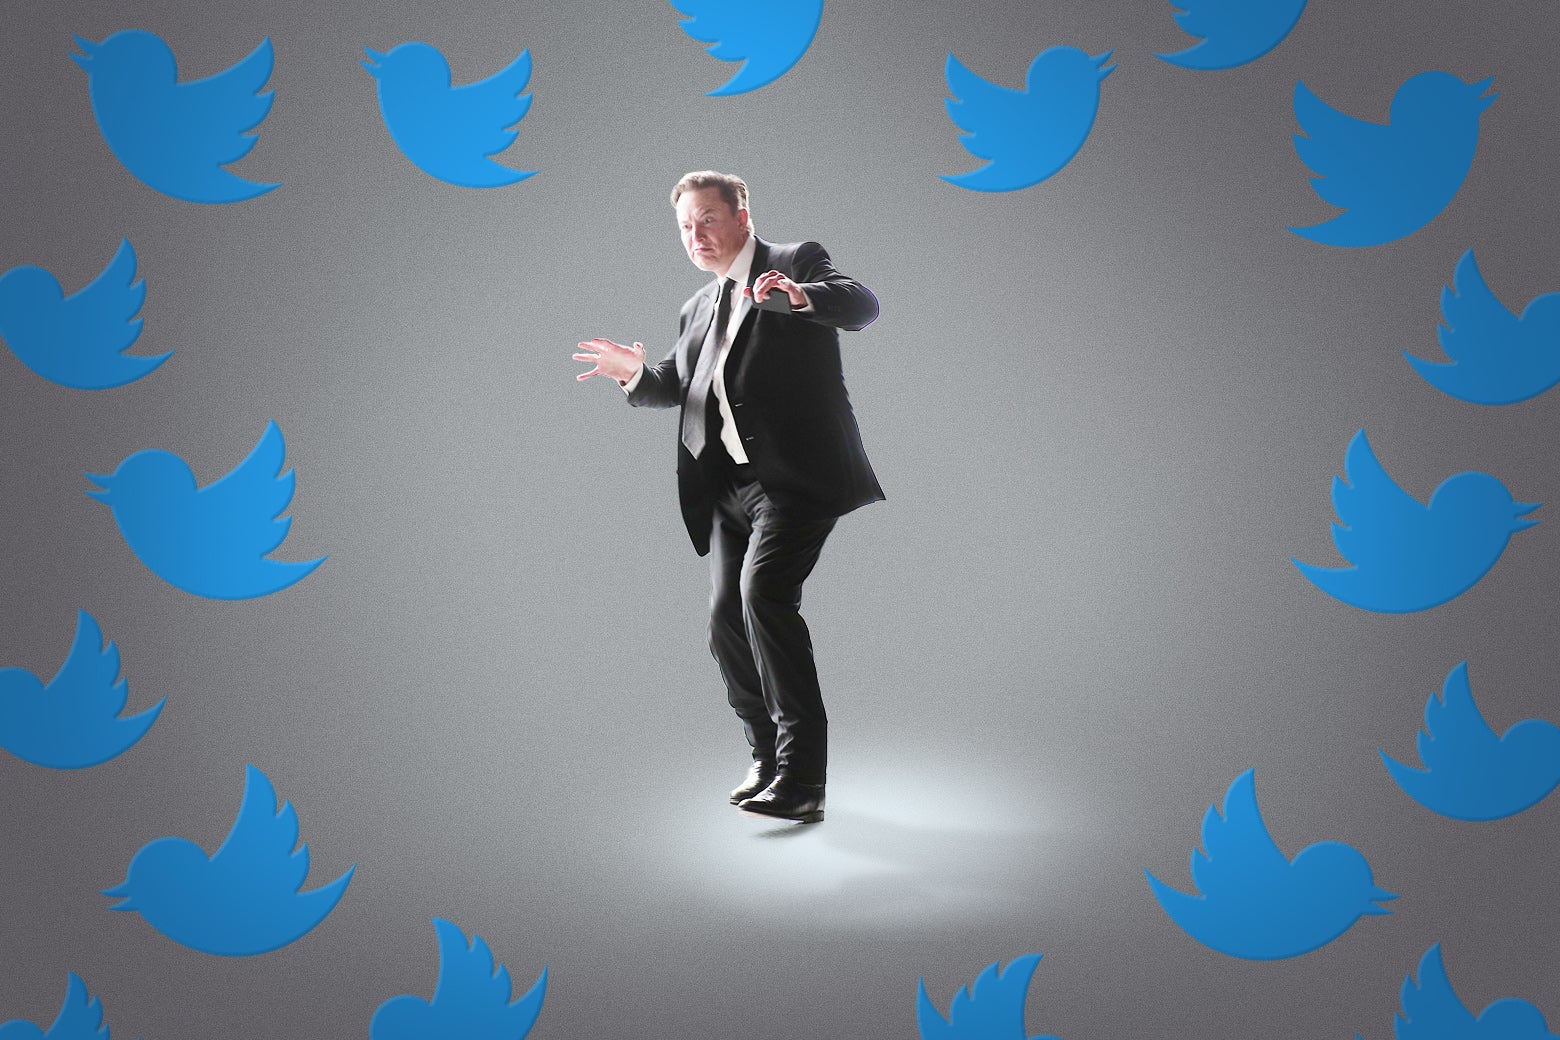 Elon Musk stands as a flock of Twitter logos surrounds him.